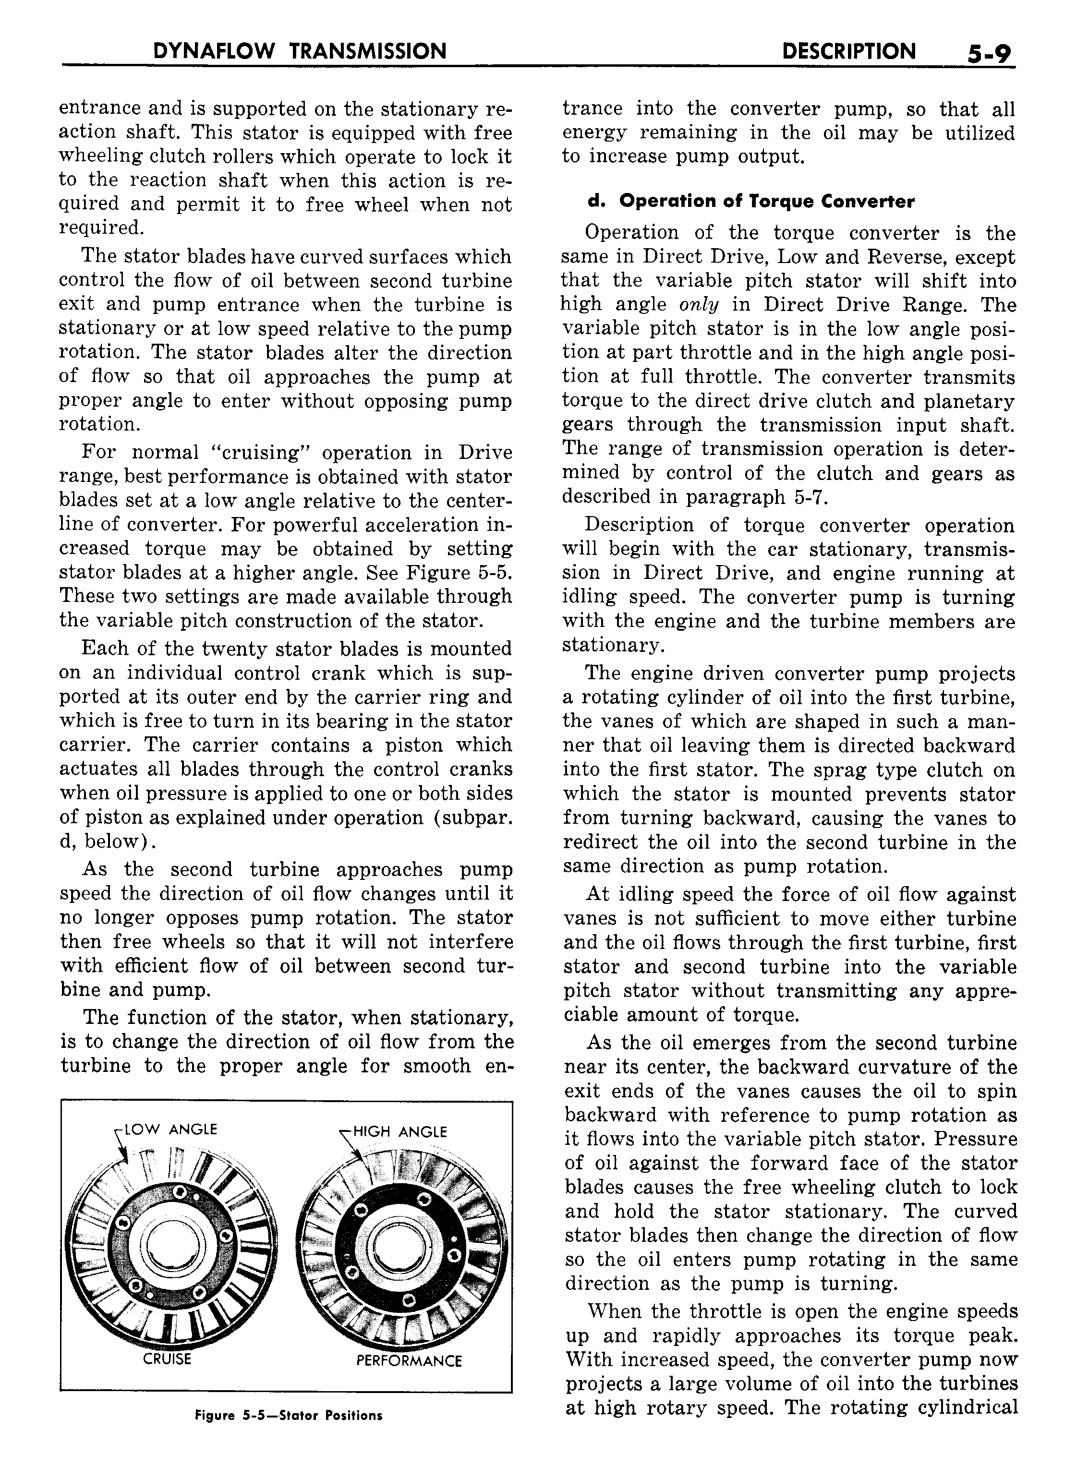 n_06 1957 Buick Shop Manual - Dynaflow-009-009.jpg